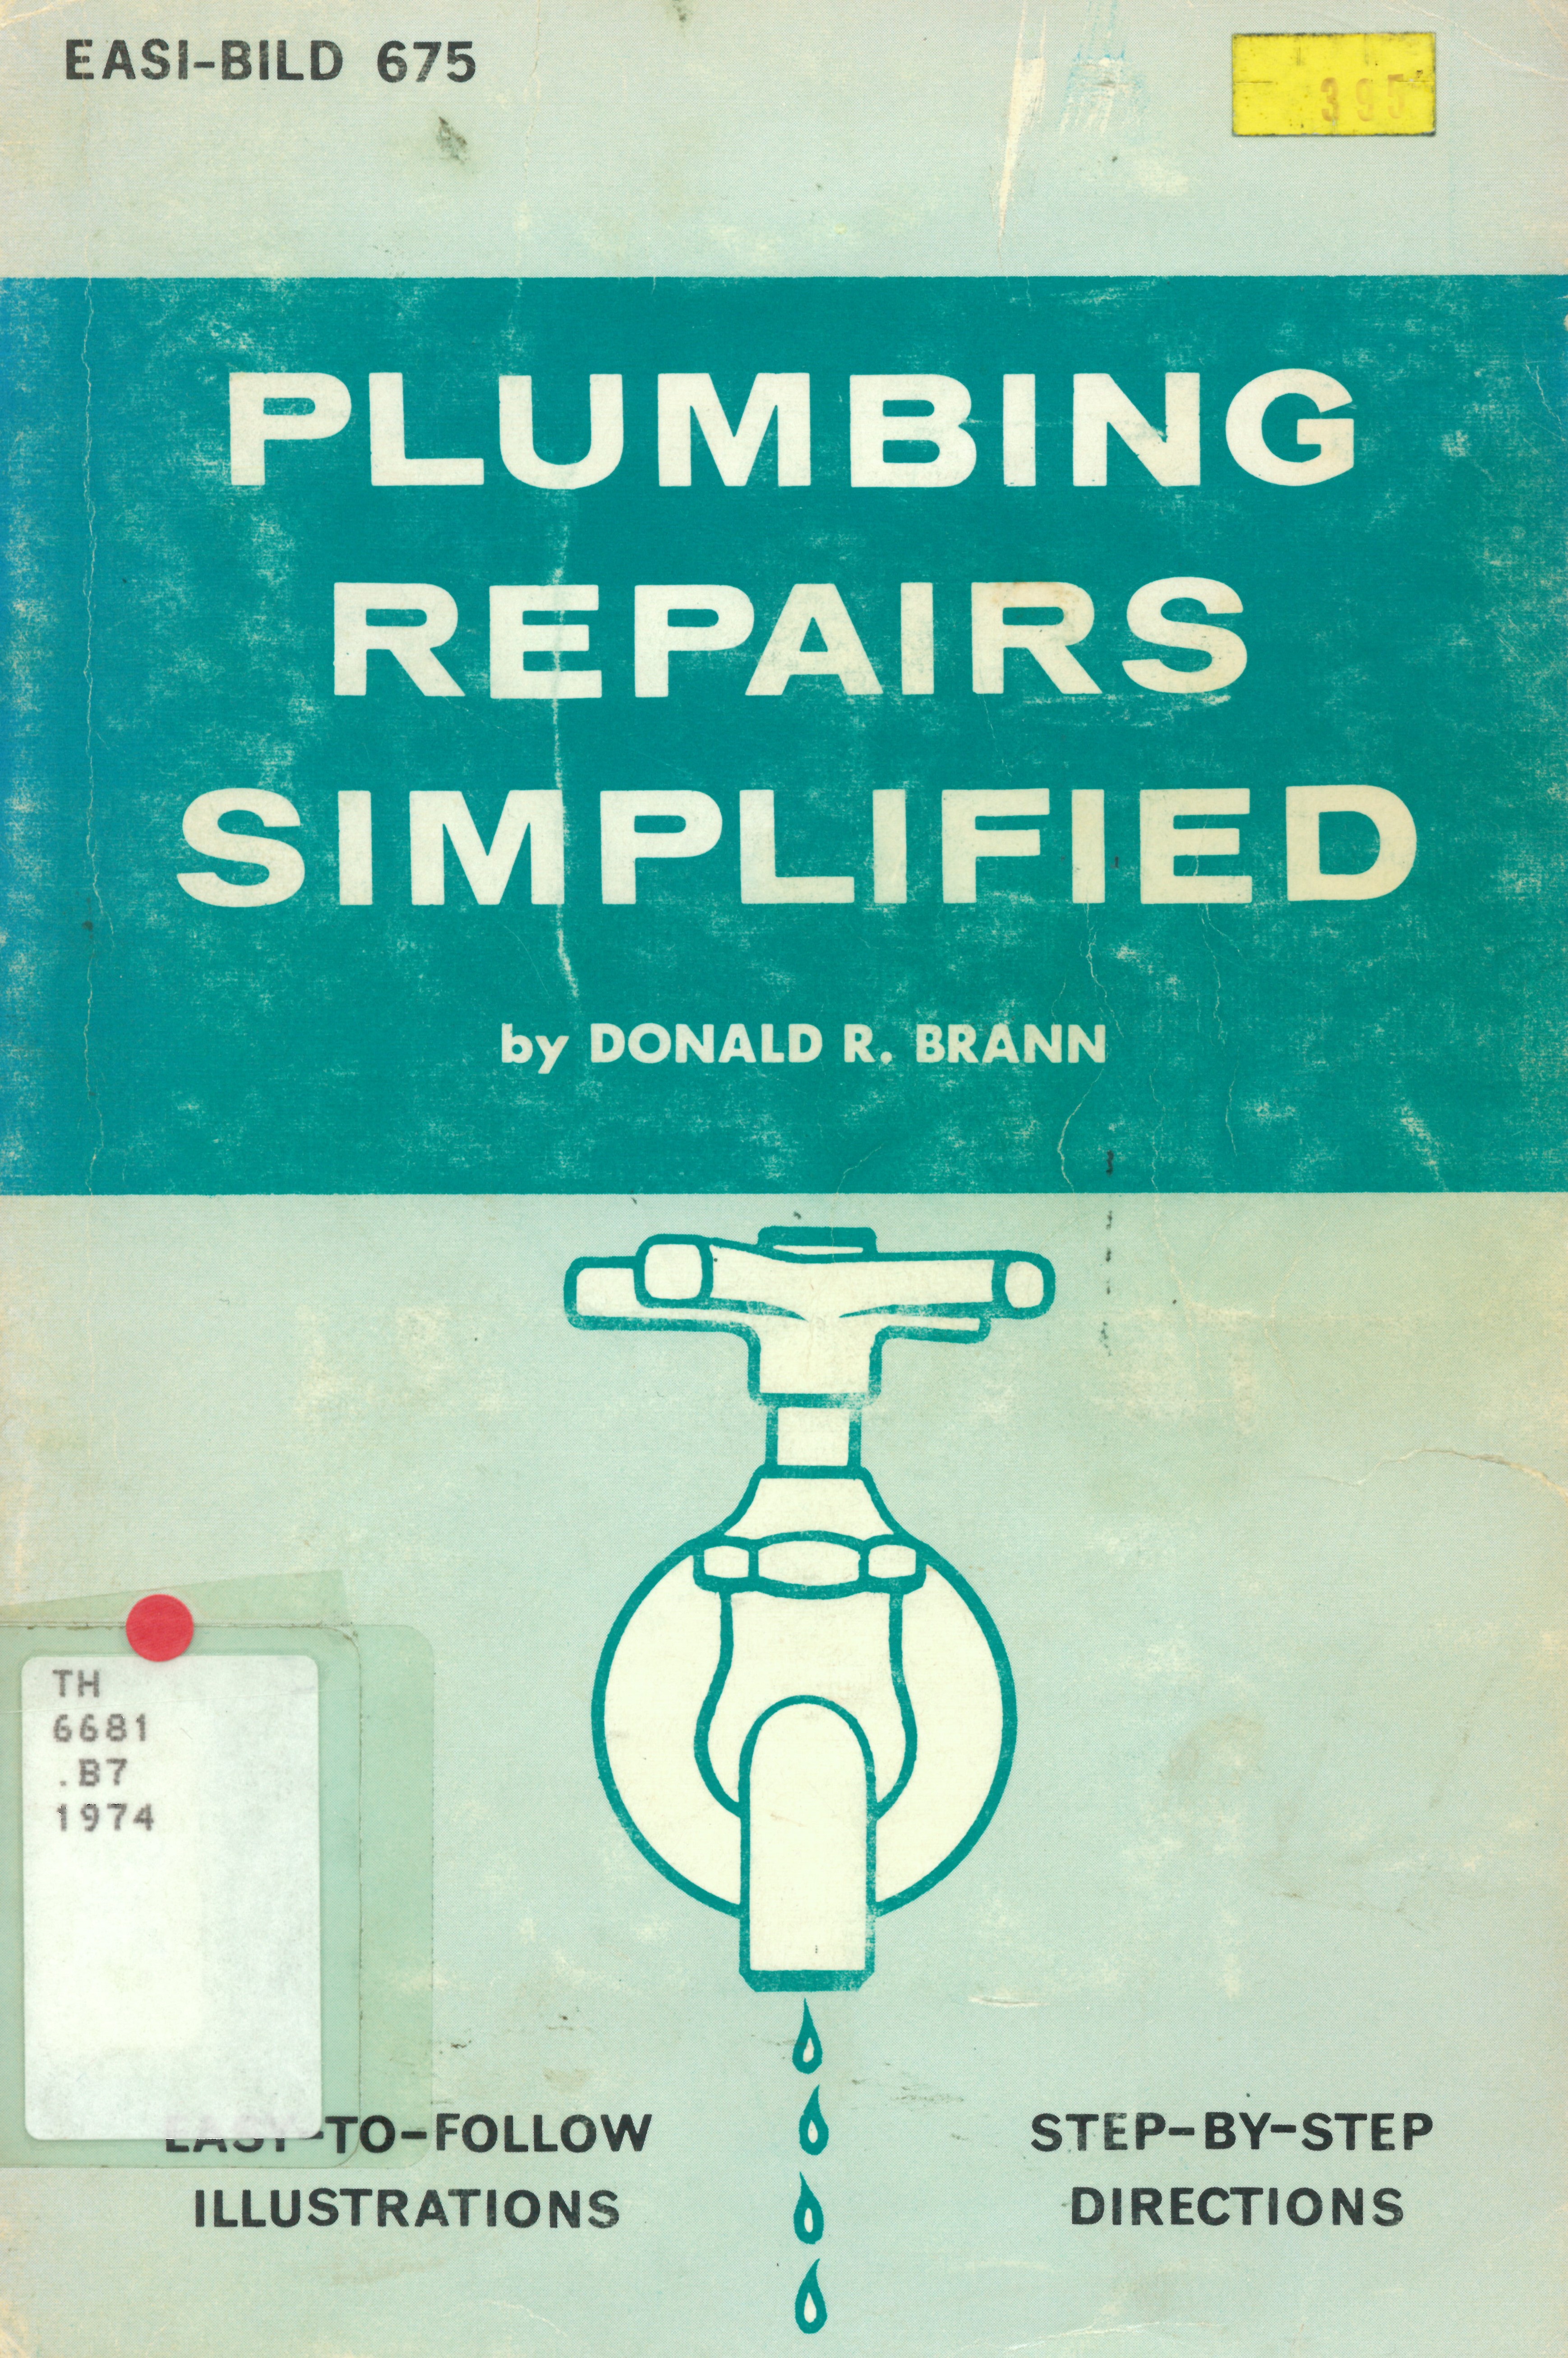 Plumbing repairs simplified